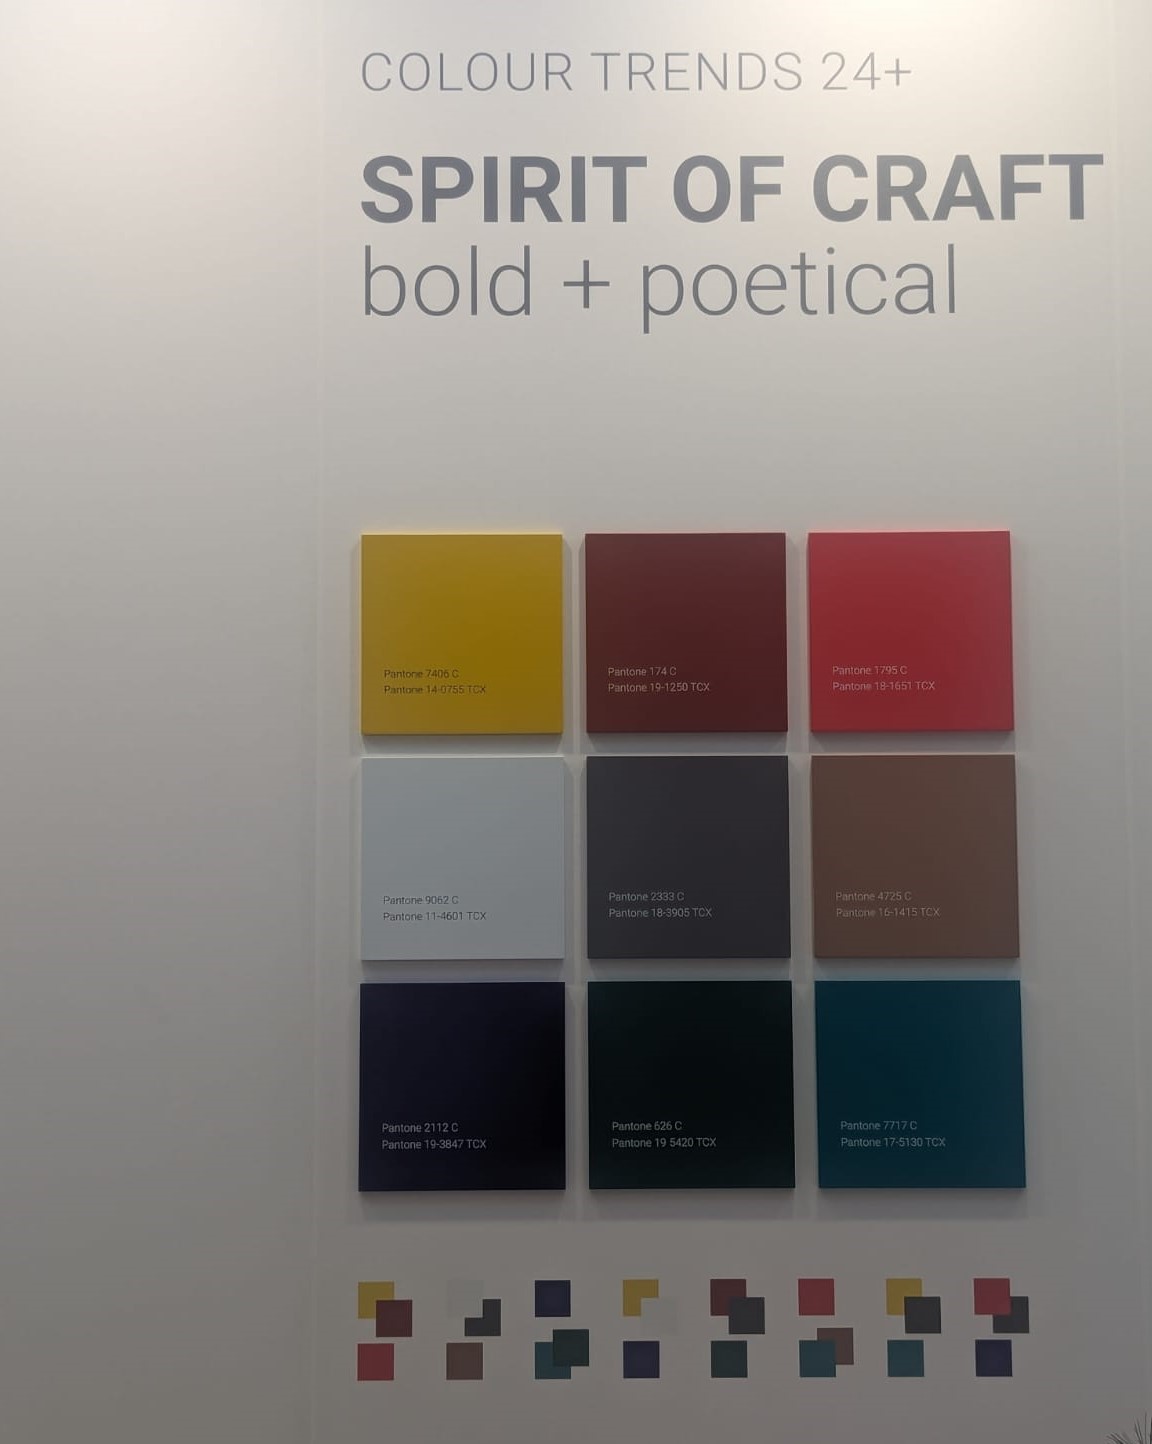 Color palette for 'Spirit of Craft' trend